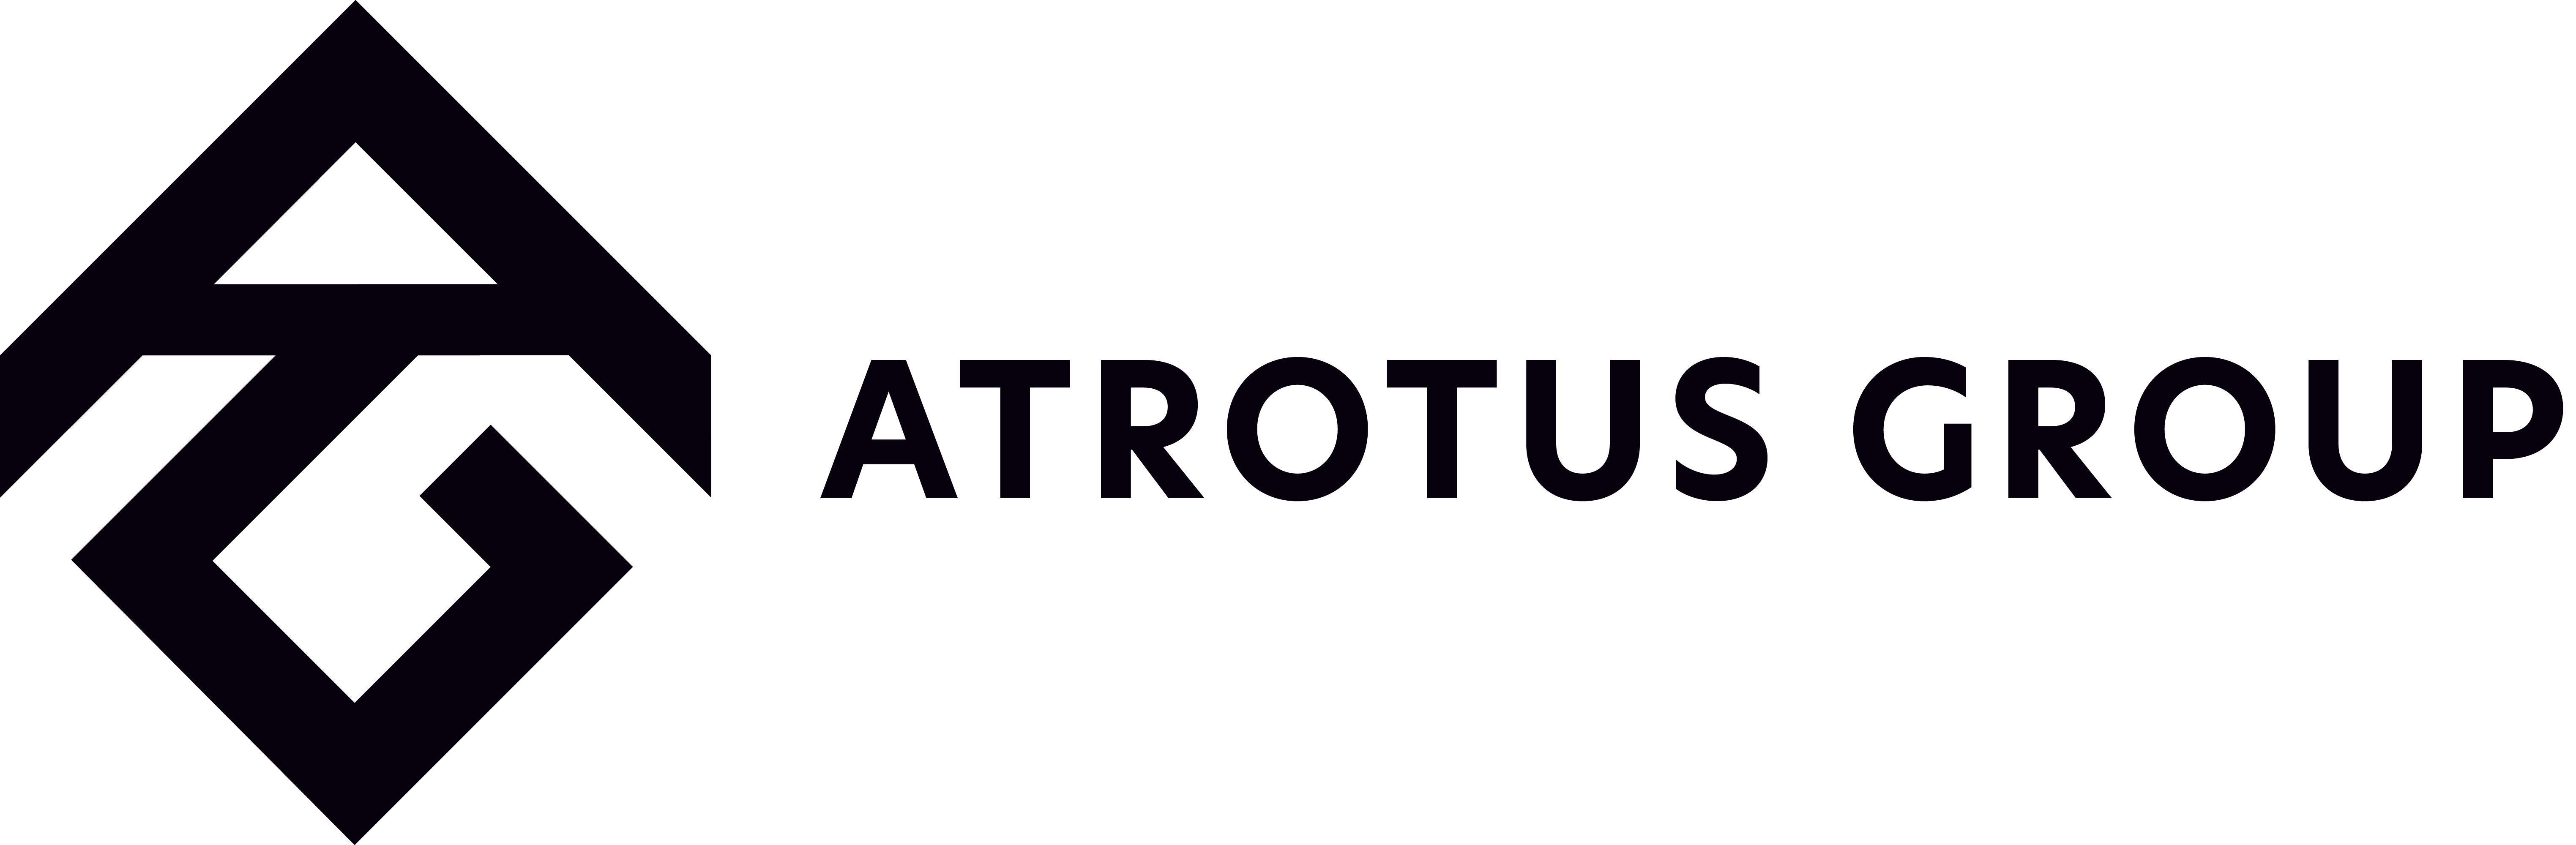 Atrotus Group Logo